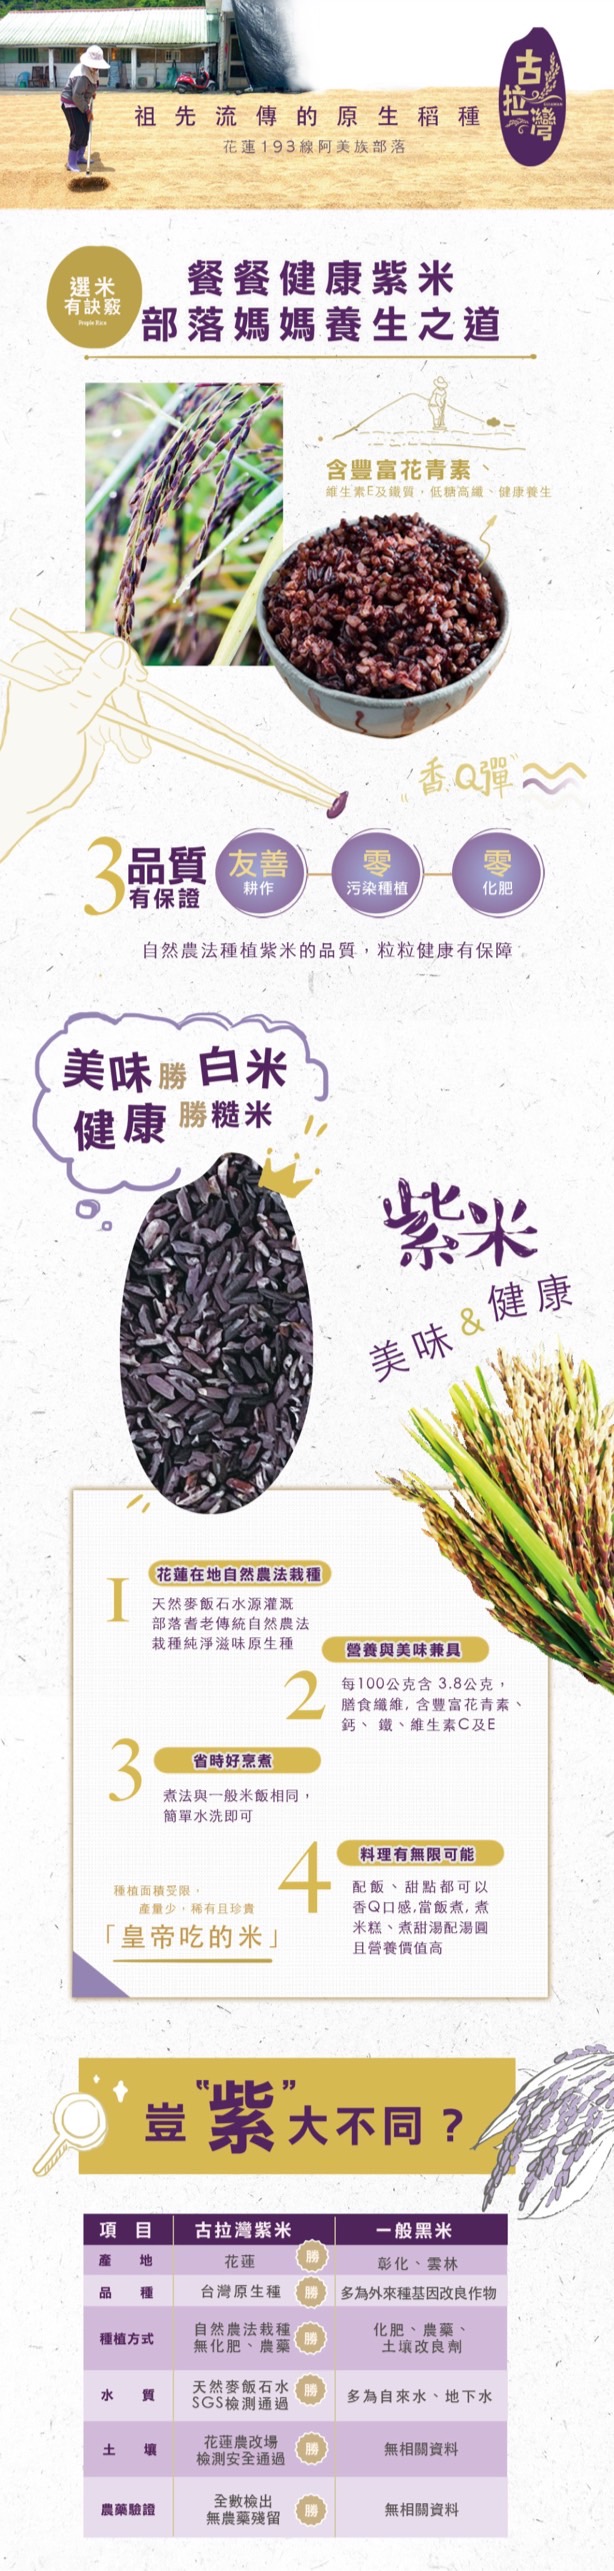 紫藜米說明